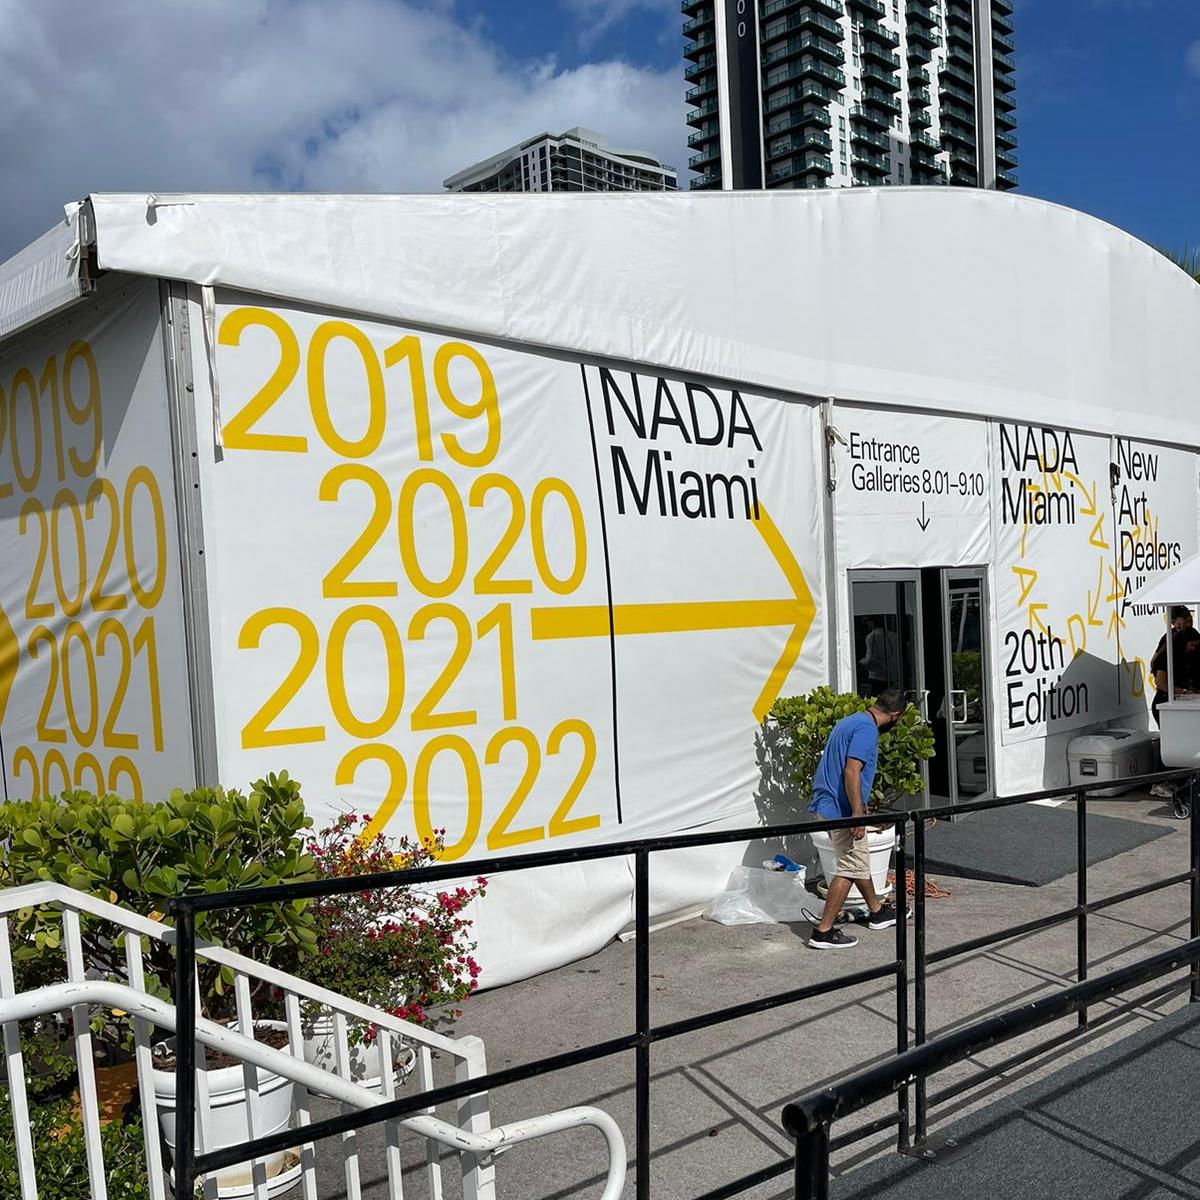 The 20th Edition of NADA Miami 2022 